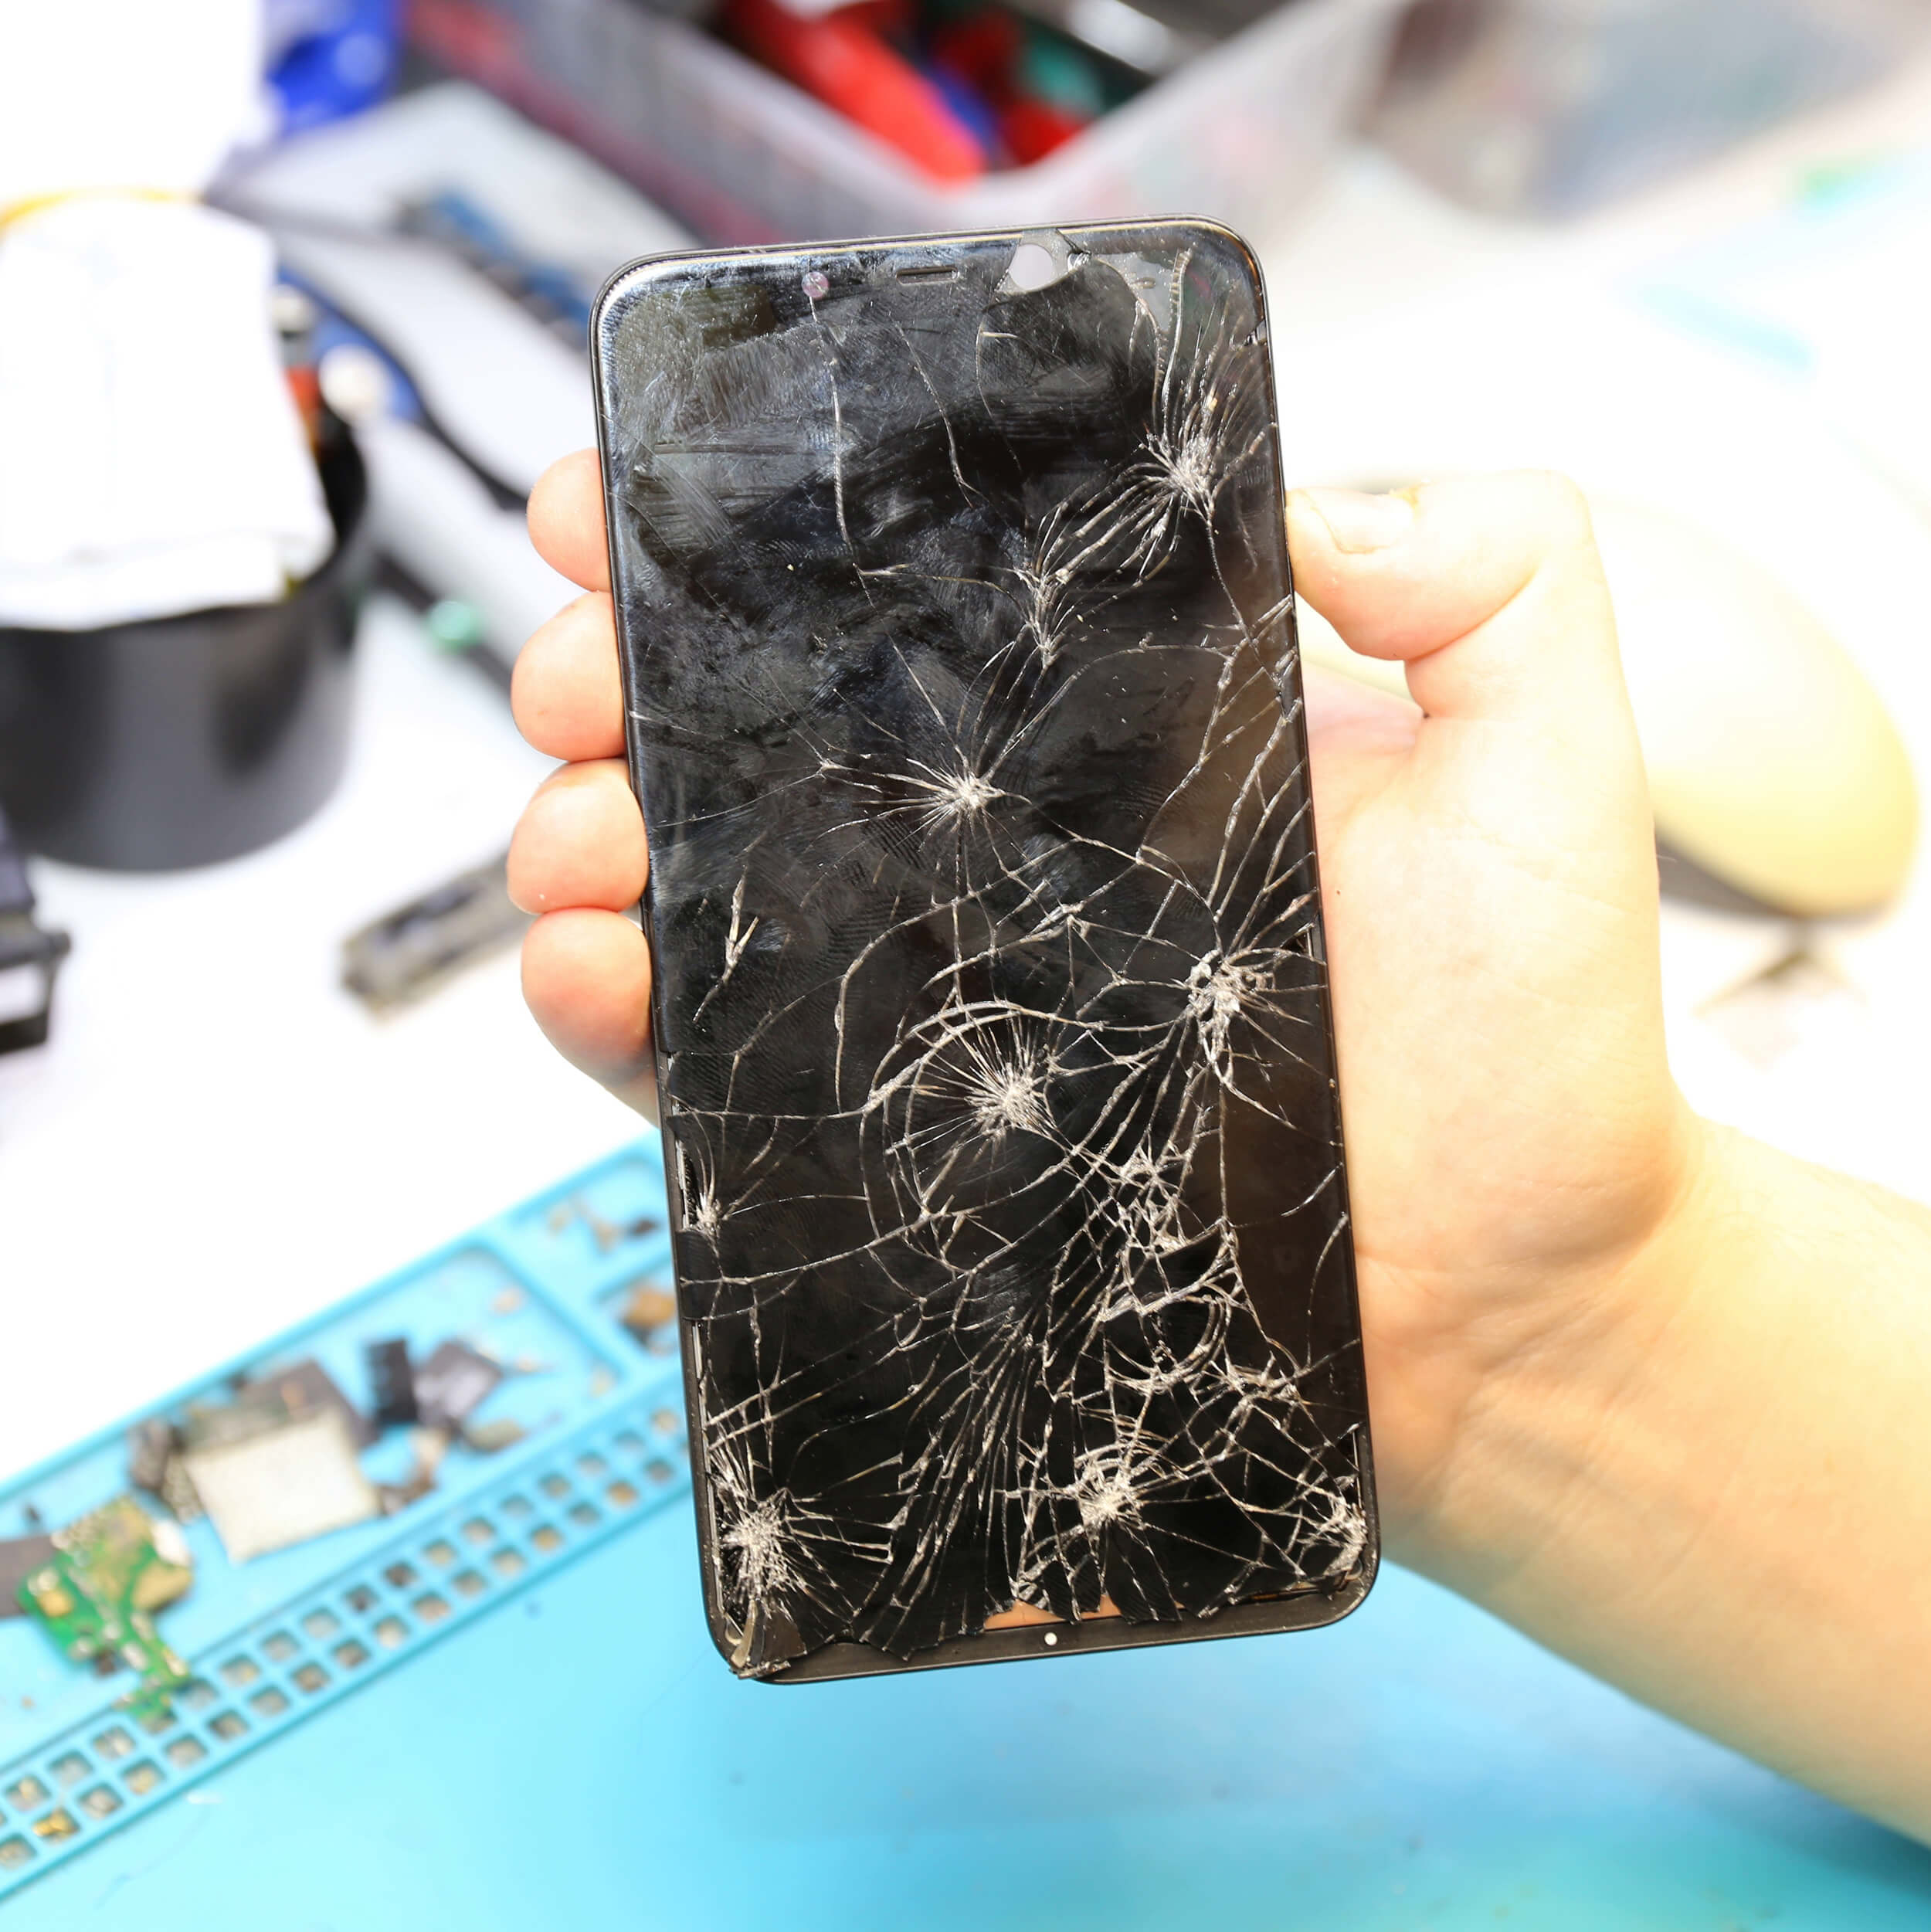  Экран телефона Xiaomi Pocophone F1 после падения